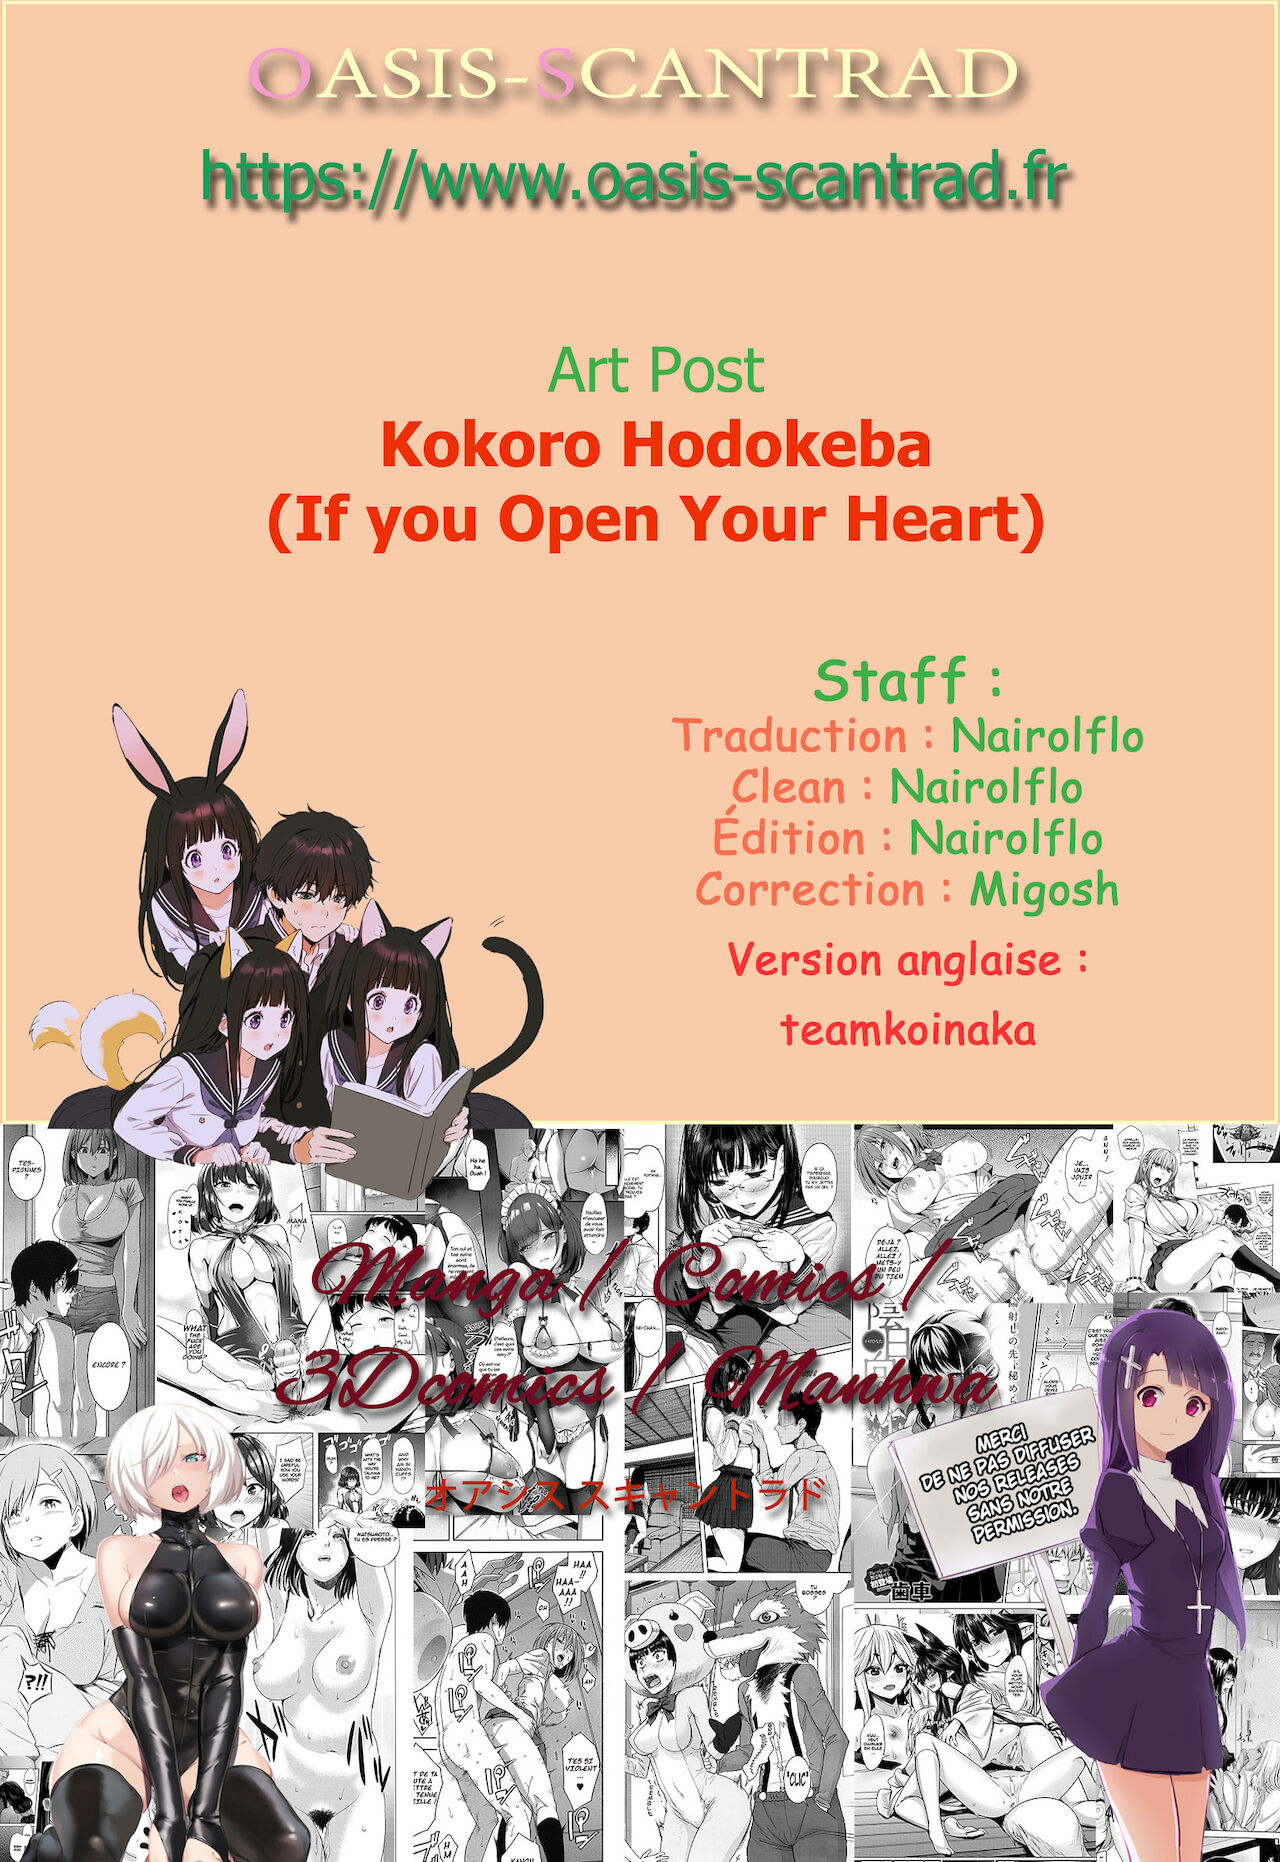 Kokoro Hodokeba numero d'image 24